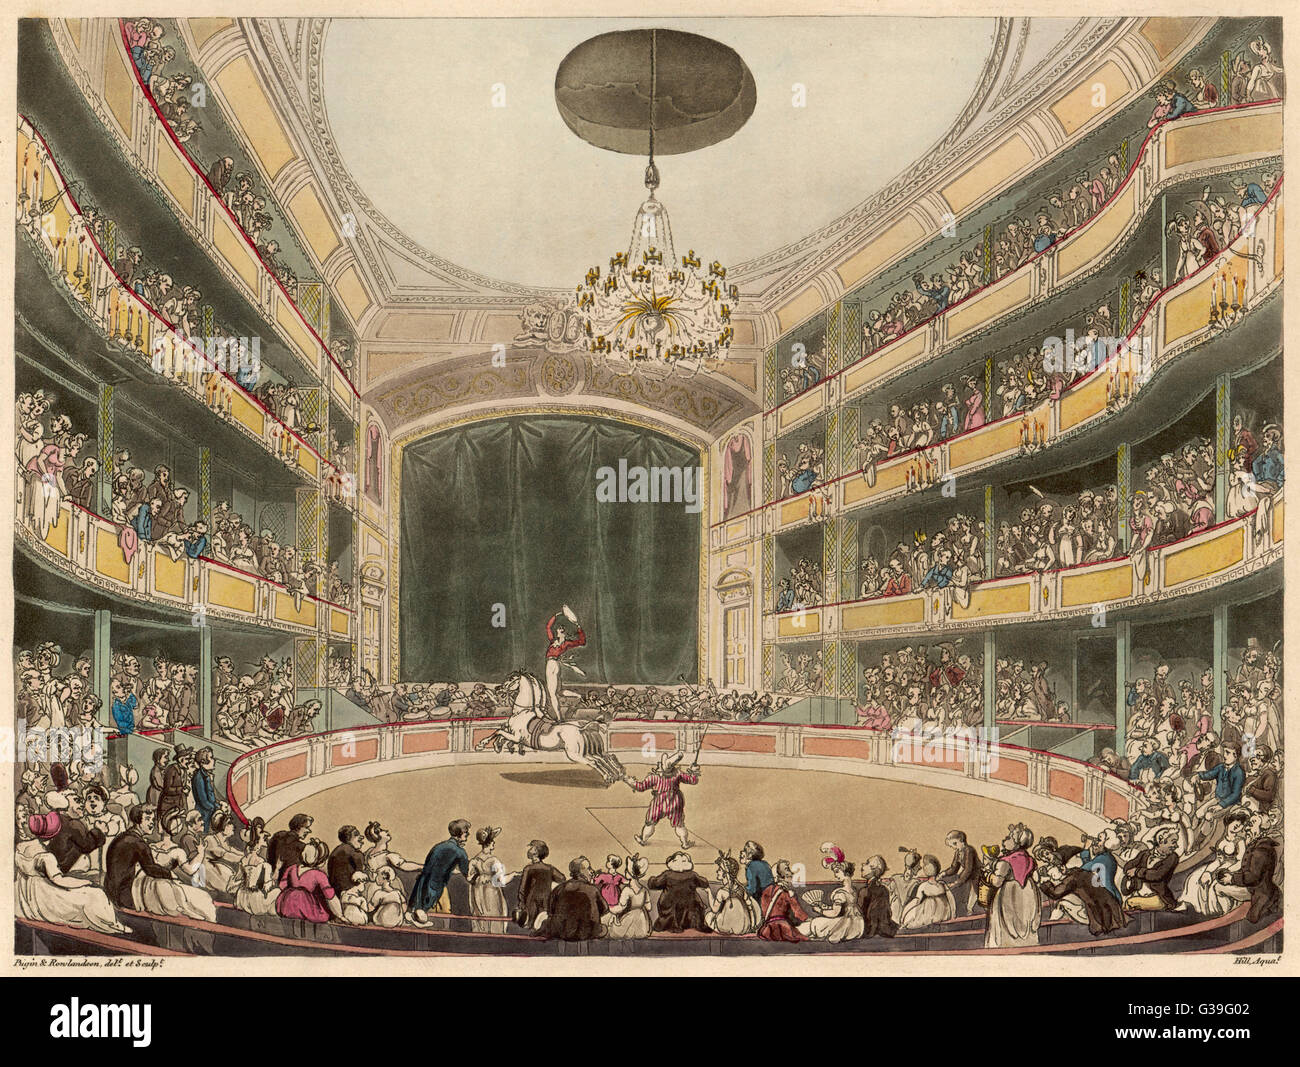 Philip Astley Amphitheater, Westminster Bridge Road, London: geliebt von Dickens, dies war auch die Szene der Clowns wie Grimaldi und populären Melodram.     Datum: 1808 Stockfoto